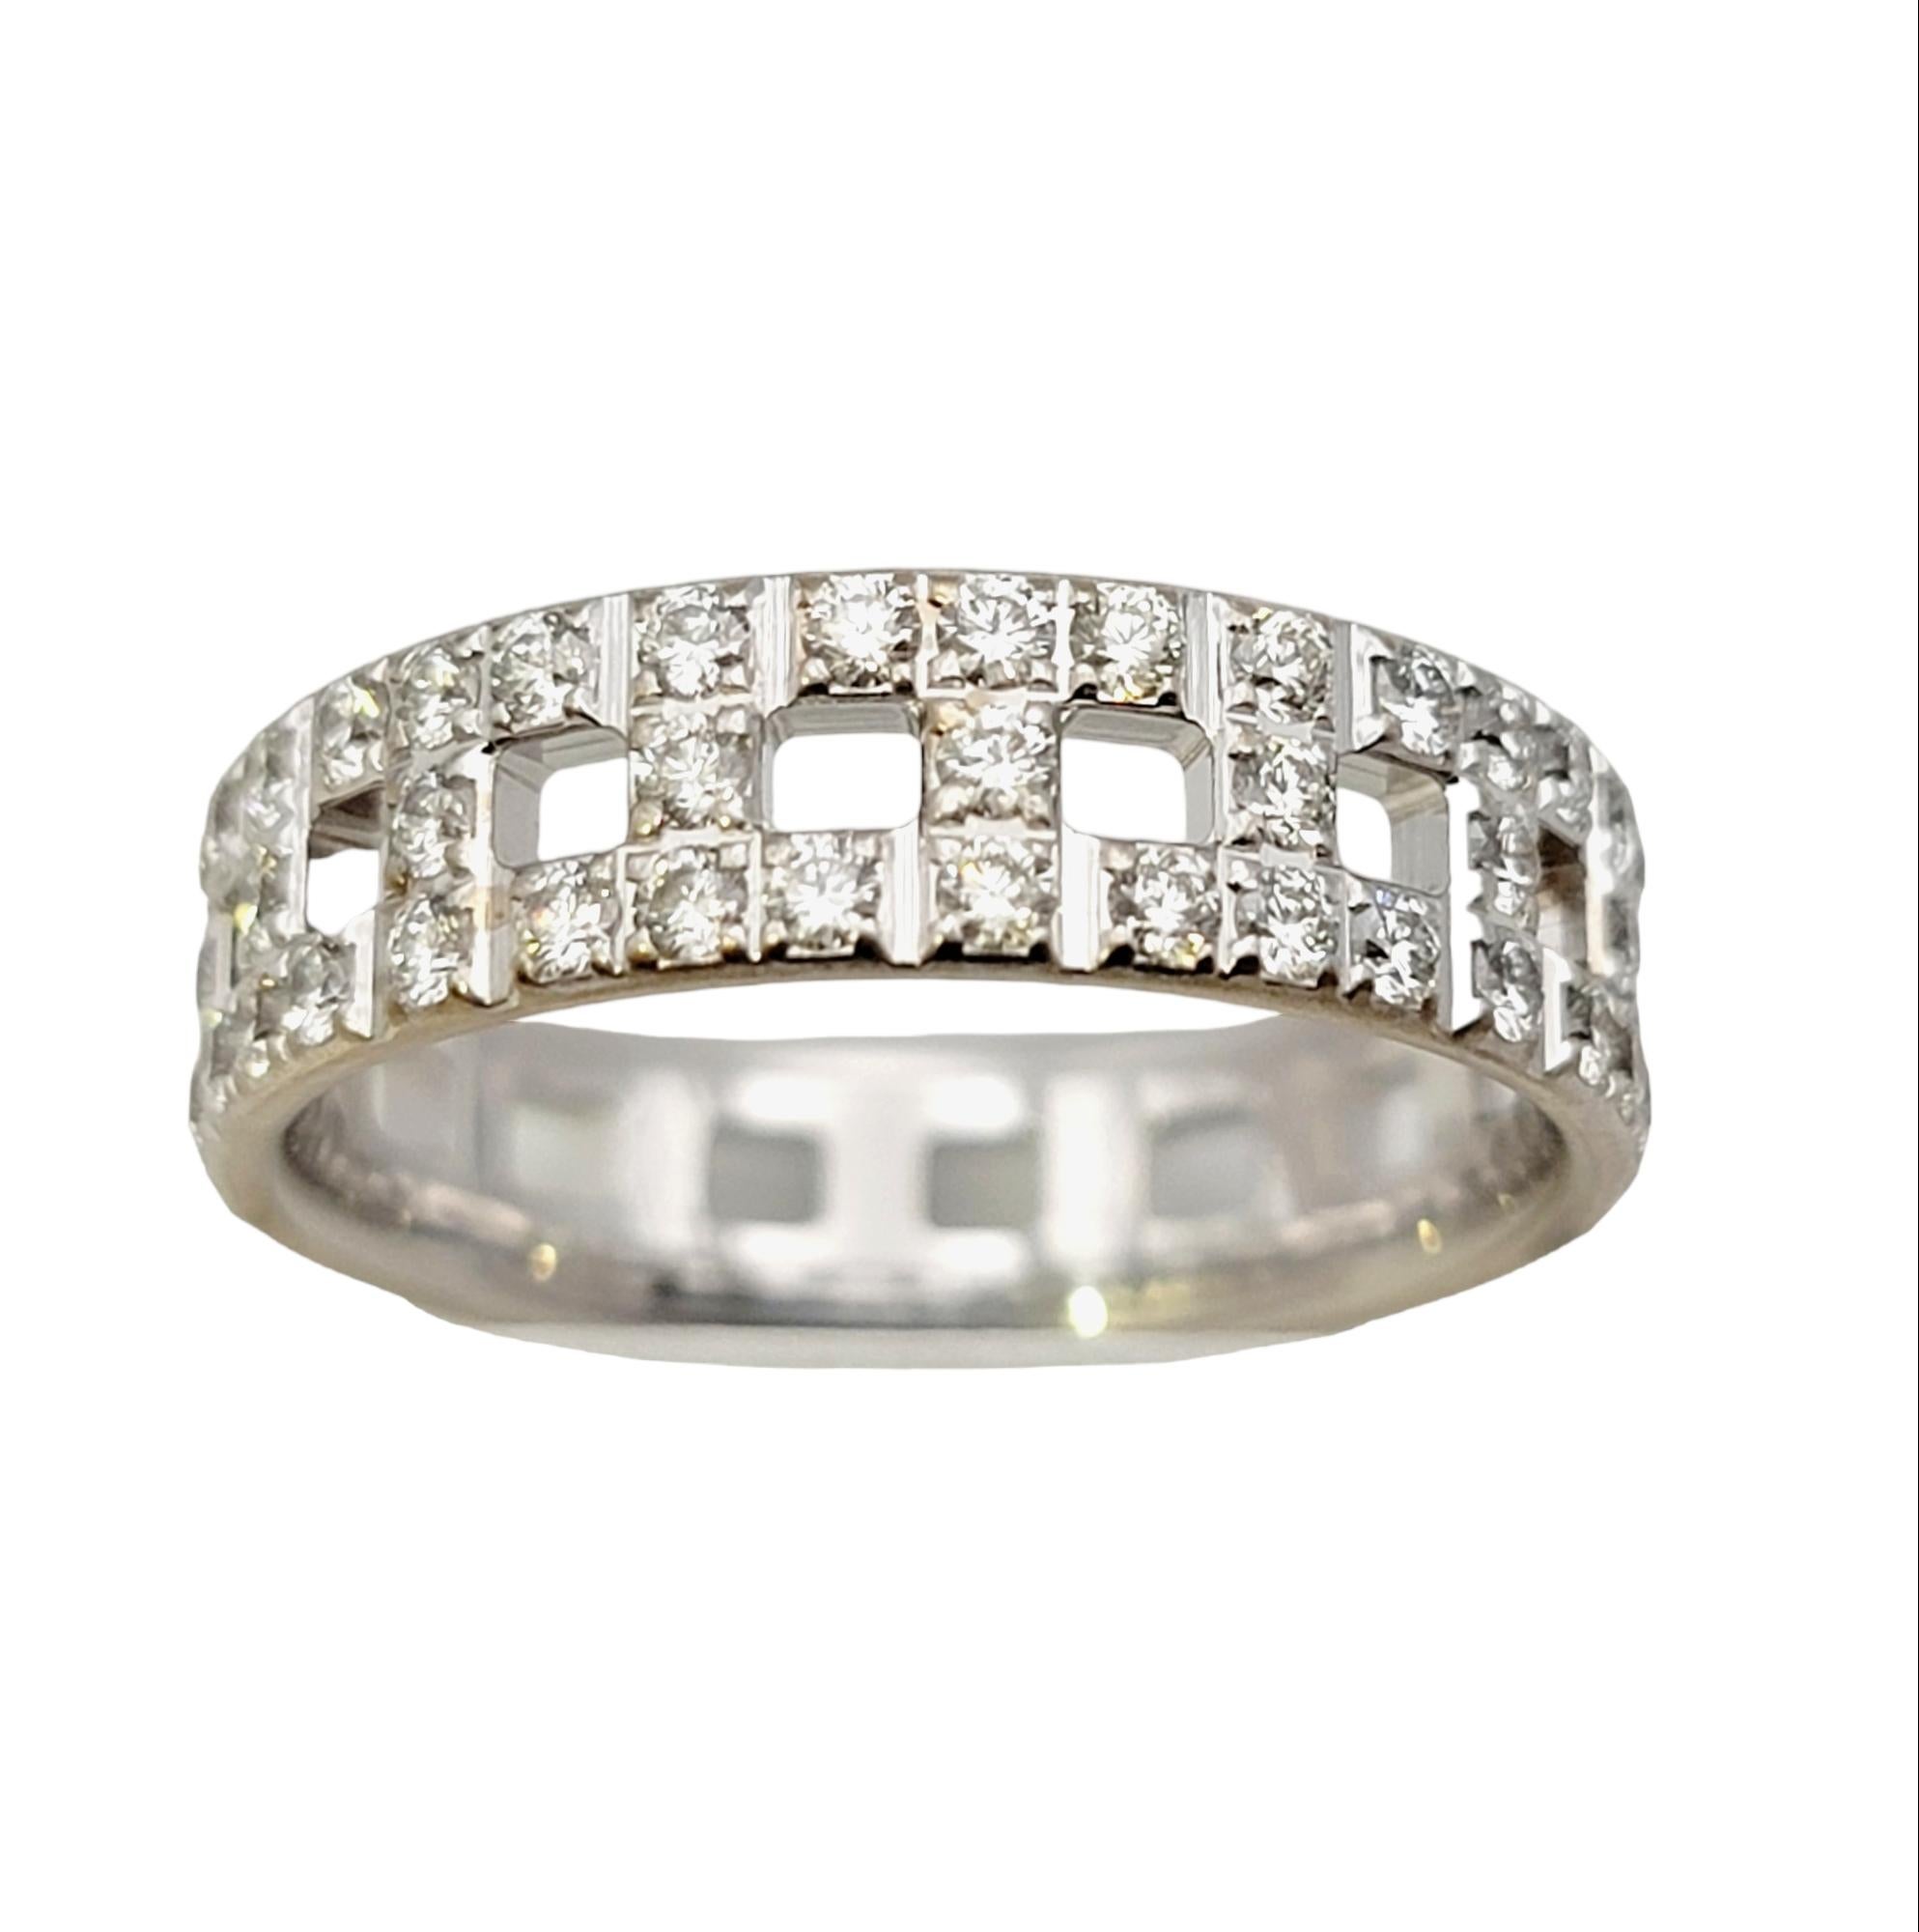 Ringgröße: 7.5

Der schillernde Tiffany T-Diamantring ist ein absoluter Blickfang am Finger.  Tiffany & Co. wurde 1837 in New York City gegründet und ist eines der traditionsreichsten Luxusdesignhäuser der Welt, das weltweit für sein innovatives